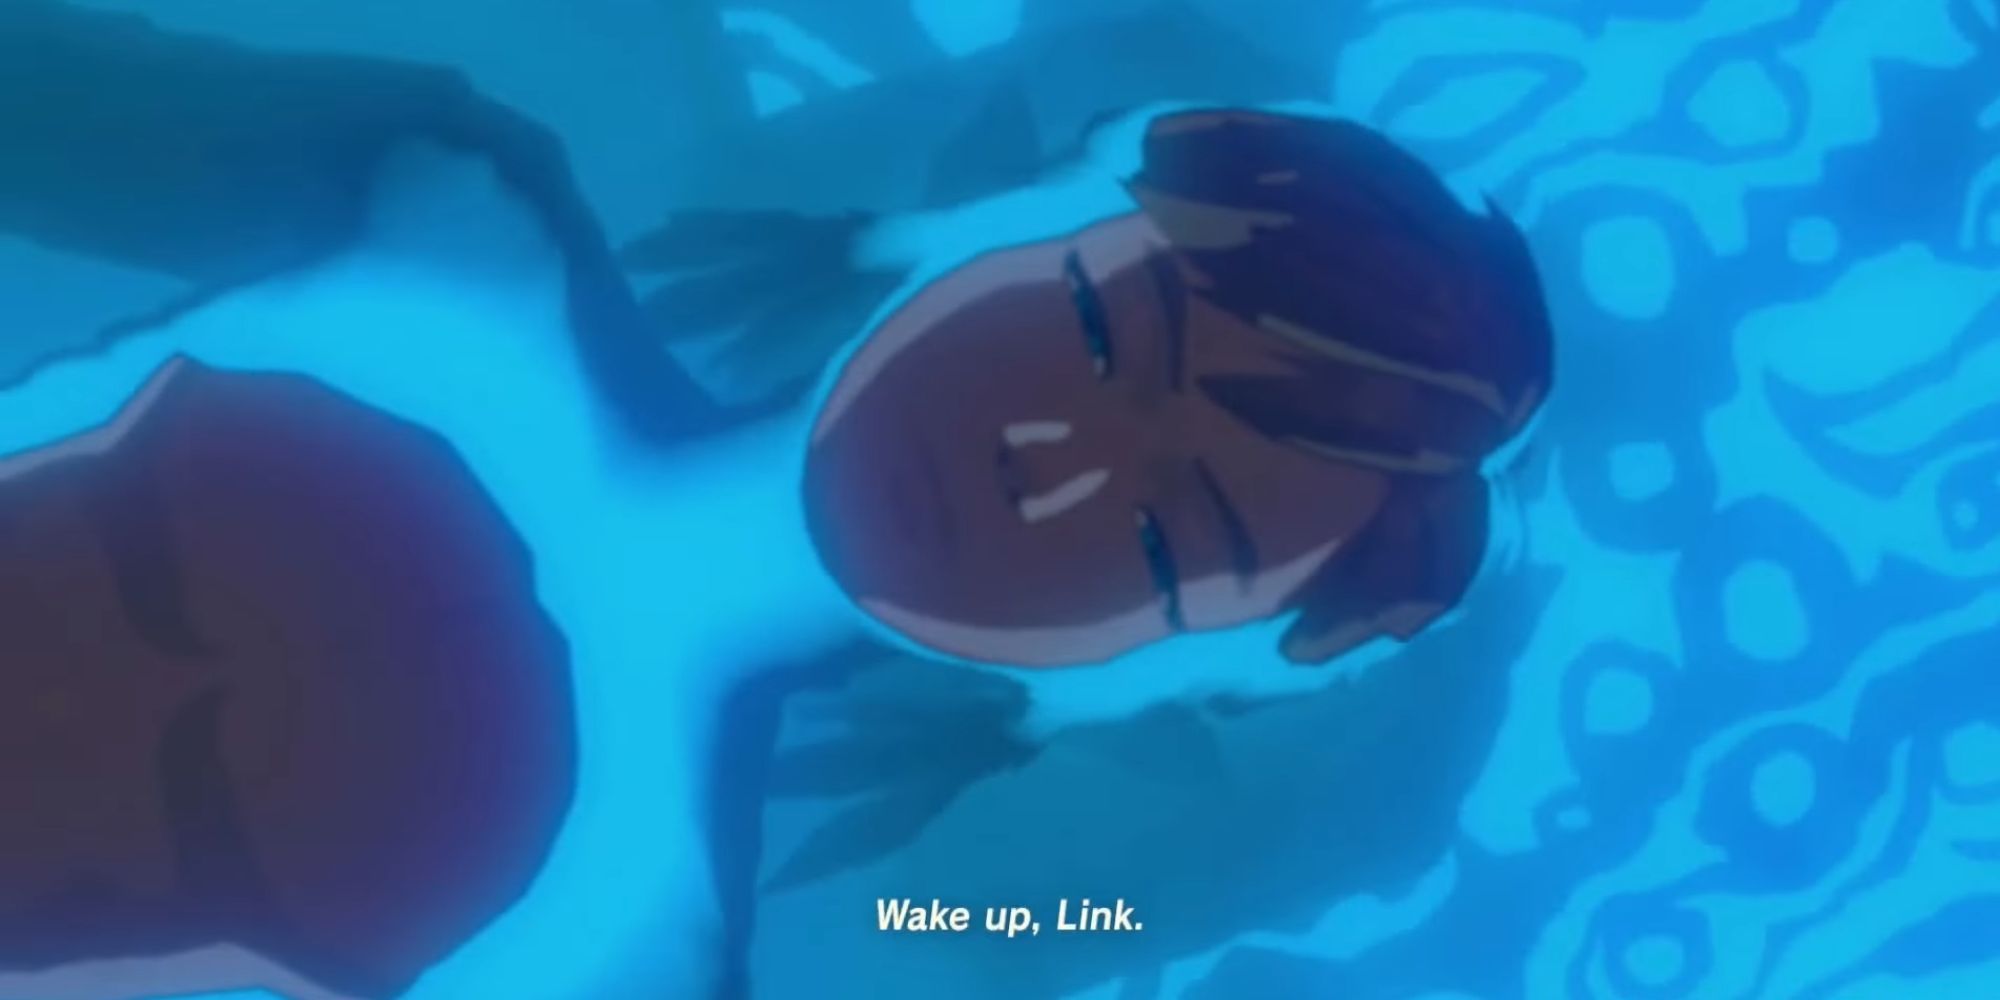 Link beginnt seine Augen zu öffnen, während er von Wasser umgeben liegt